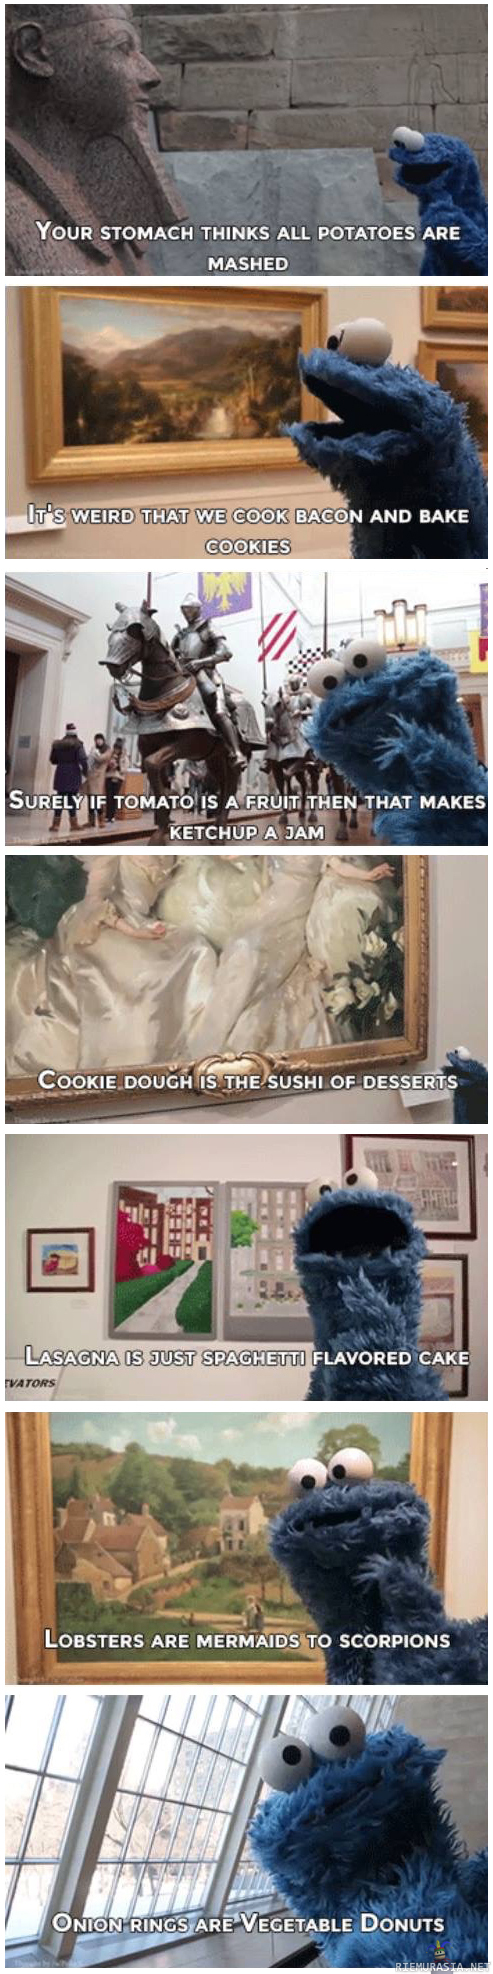 Cookie monsterin ajatuksia - Cookie Monster on suurien ajatusten äärellä